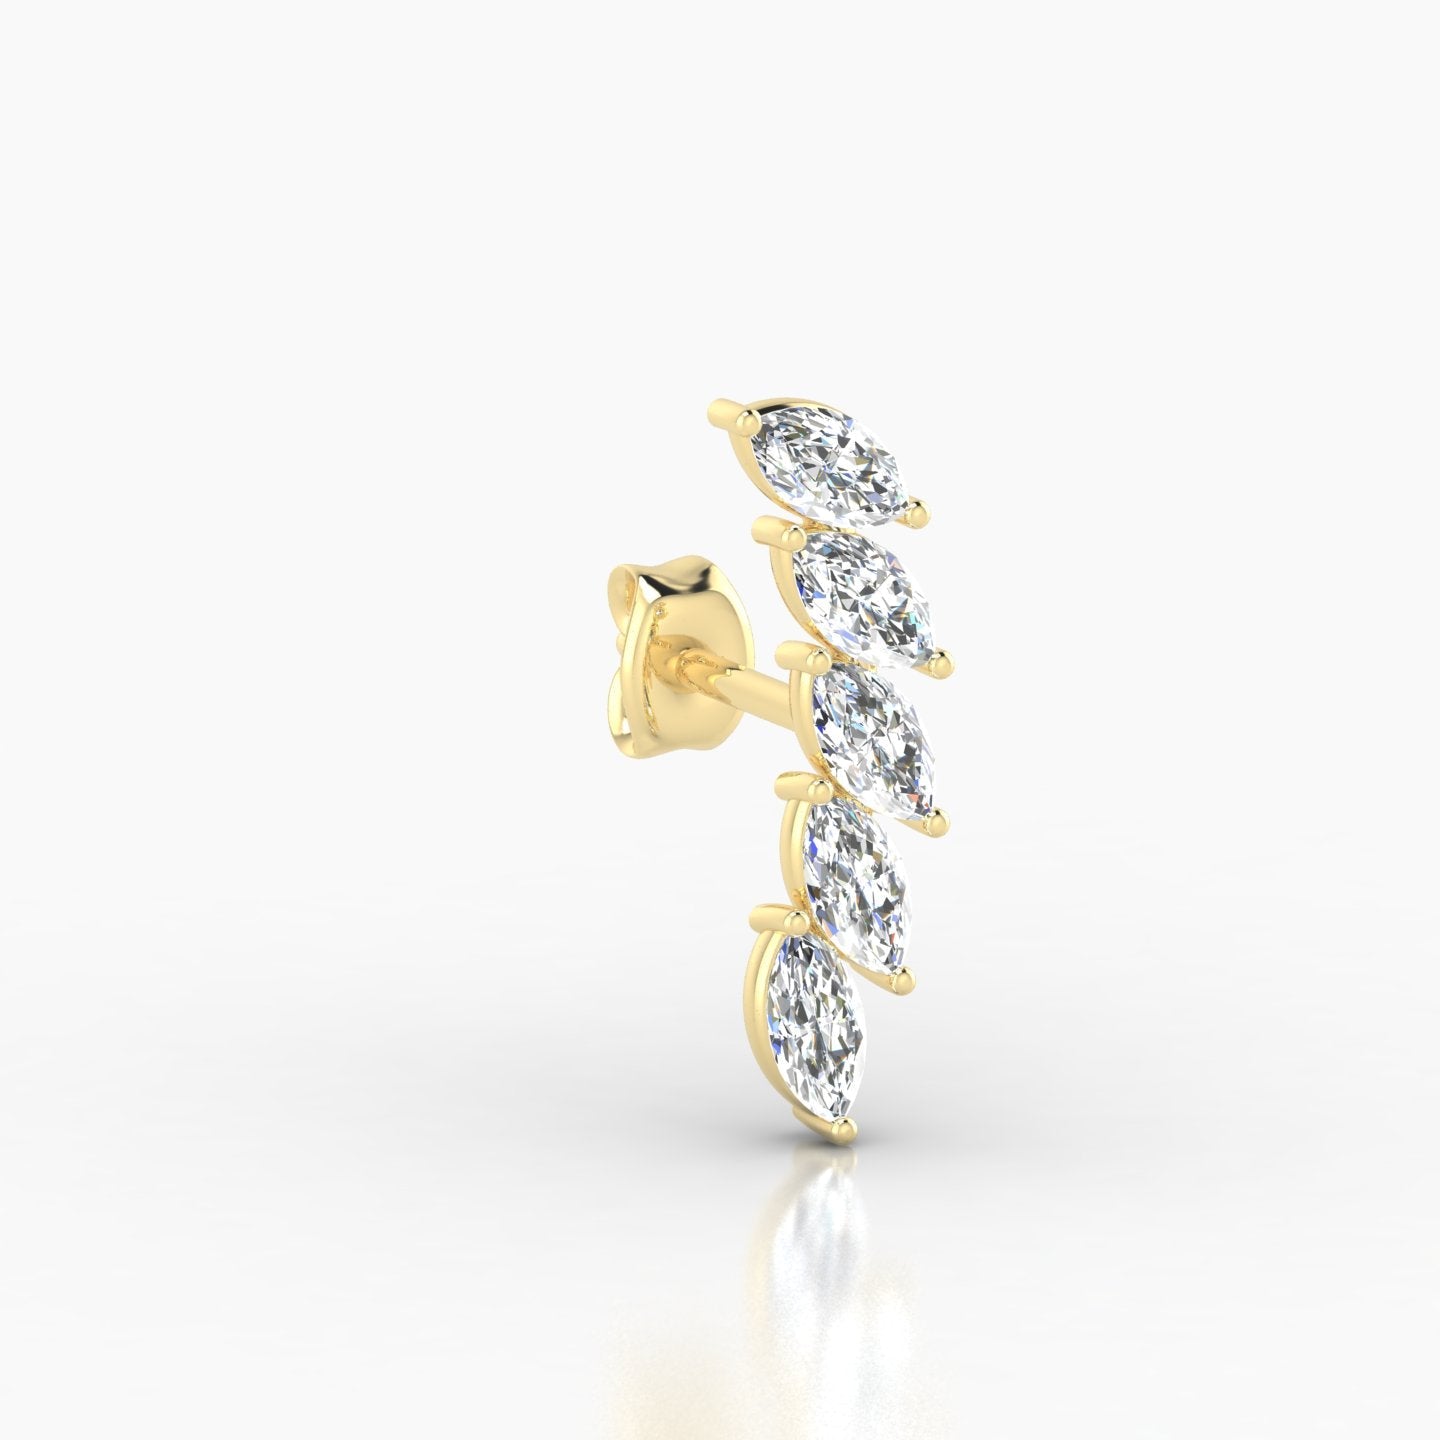 Celeste | 18k Yellow Gold 14.5 mm Long Diamond Earring